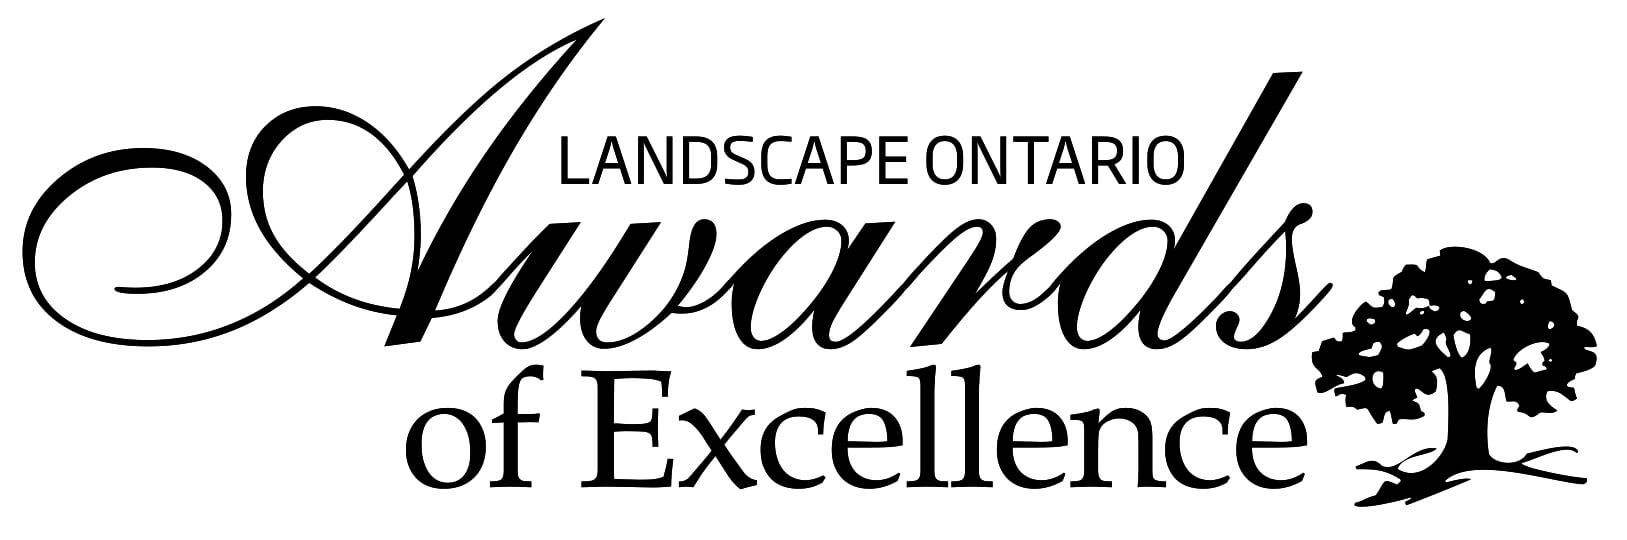 Landscape Ontario Awards of Excellence logo